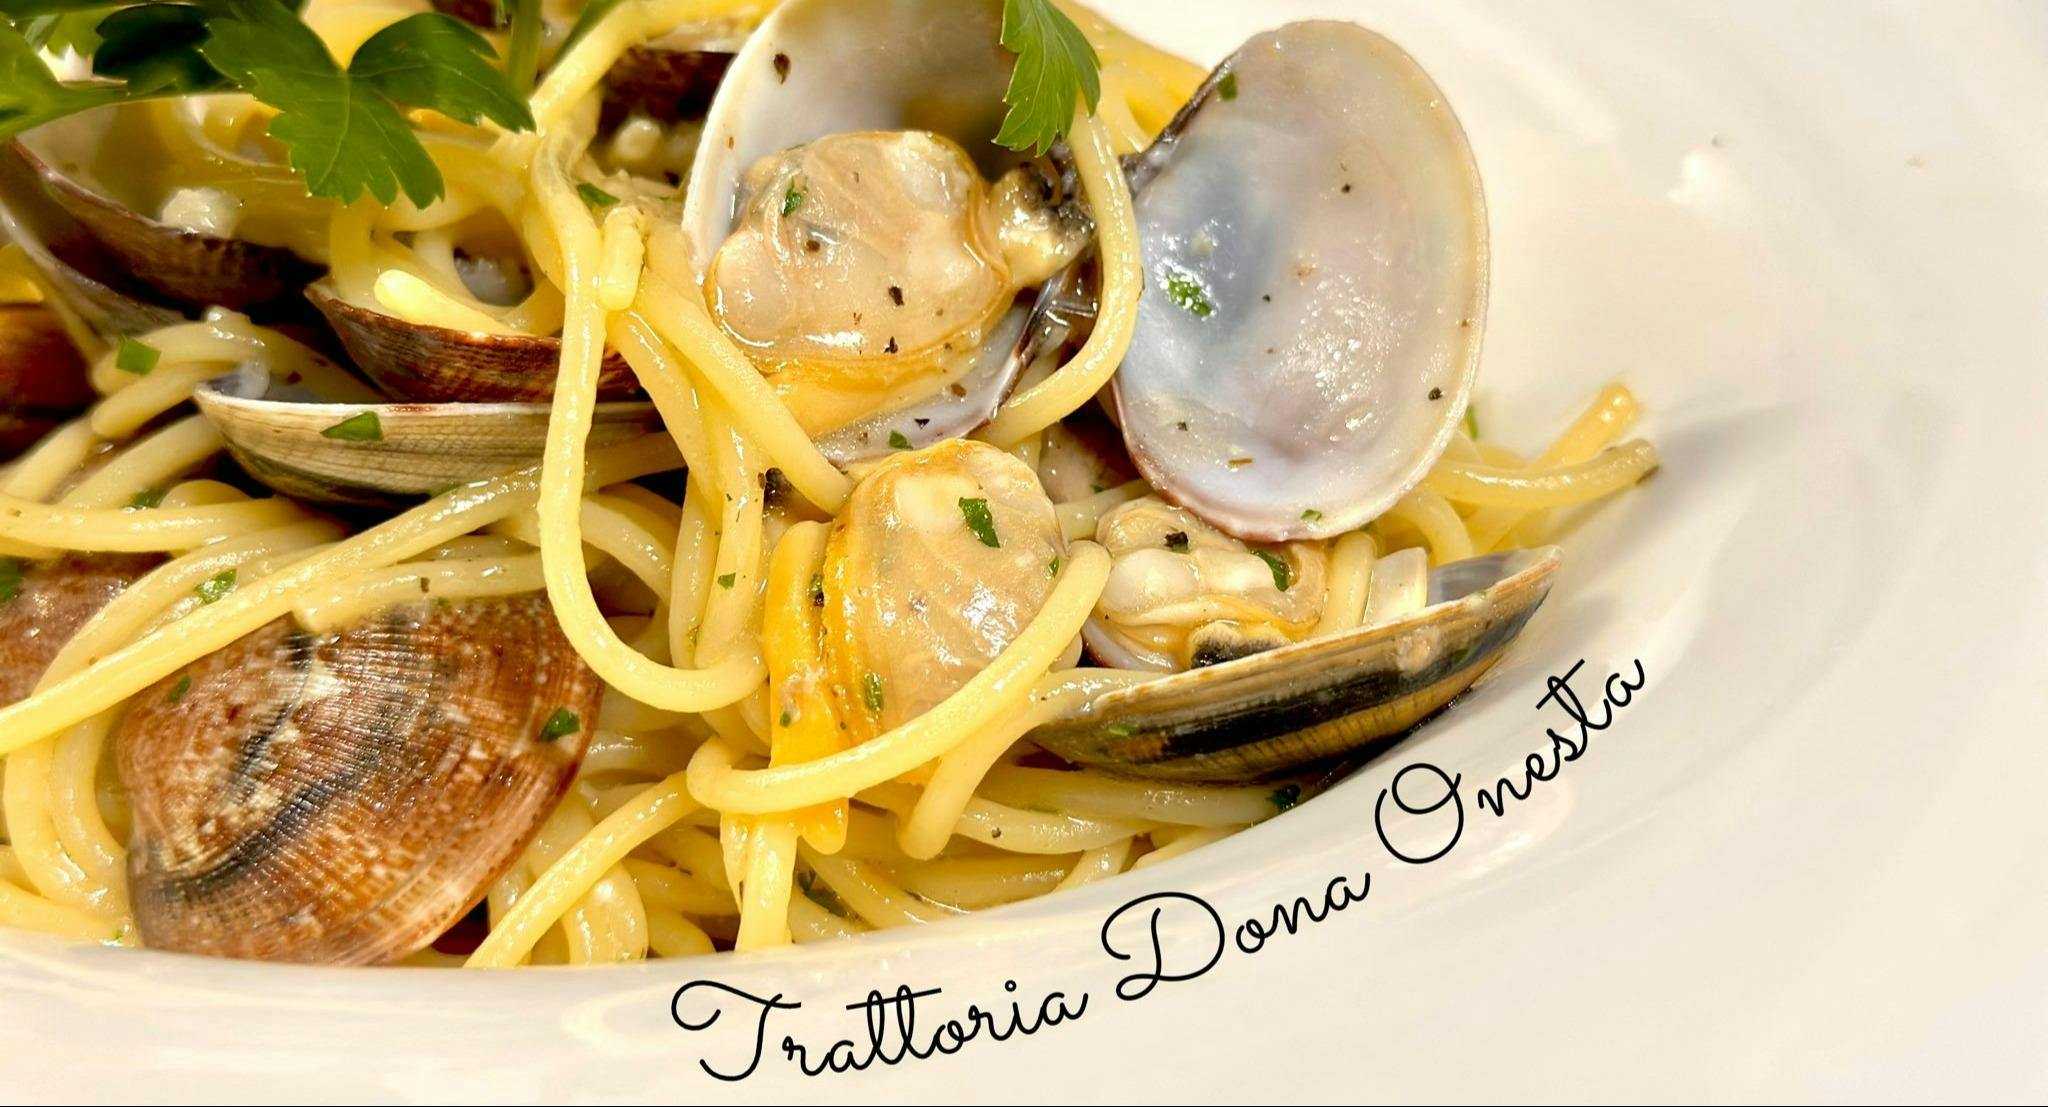 Photo of restaurant Trattoria Dona Onesta in Dorsoduro/Accademia, Venice